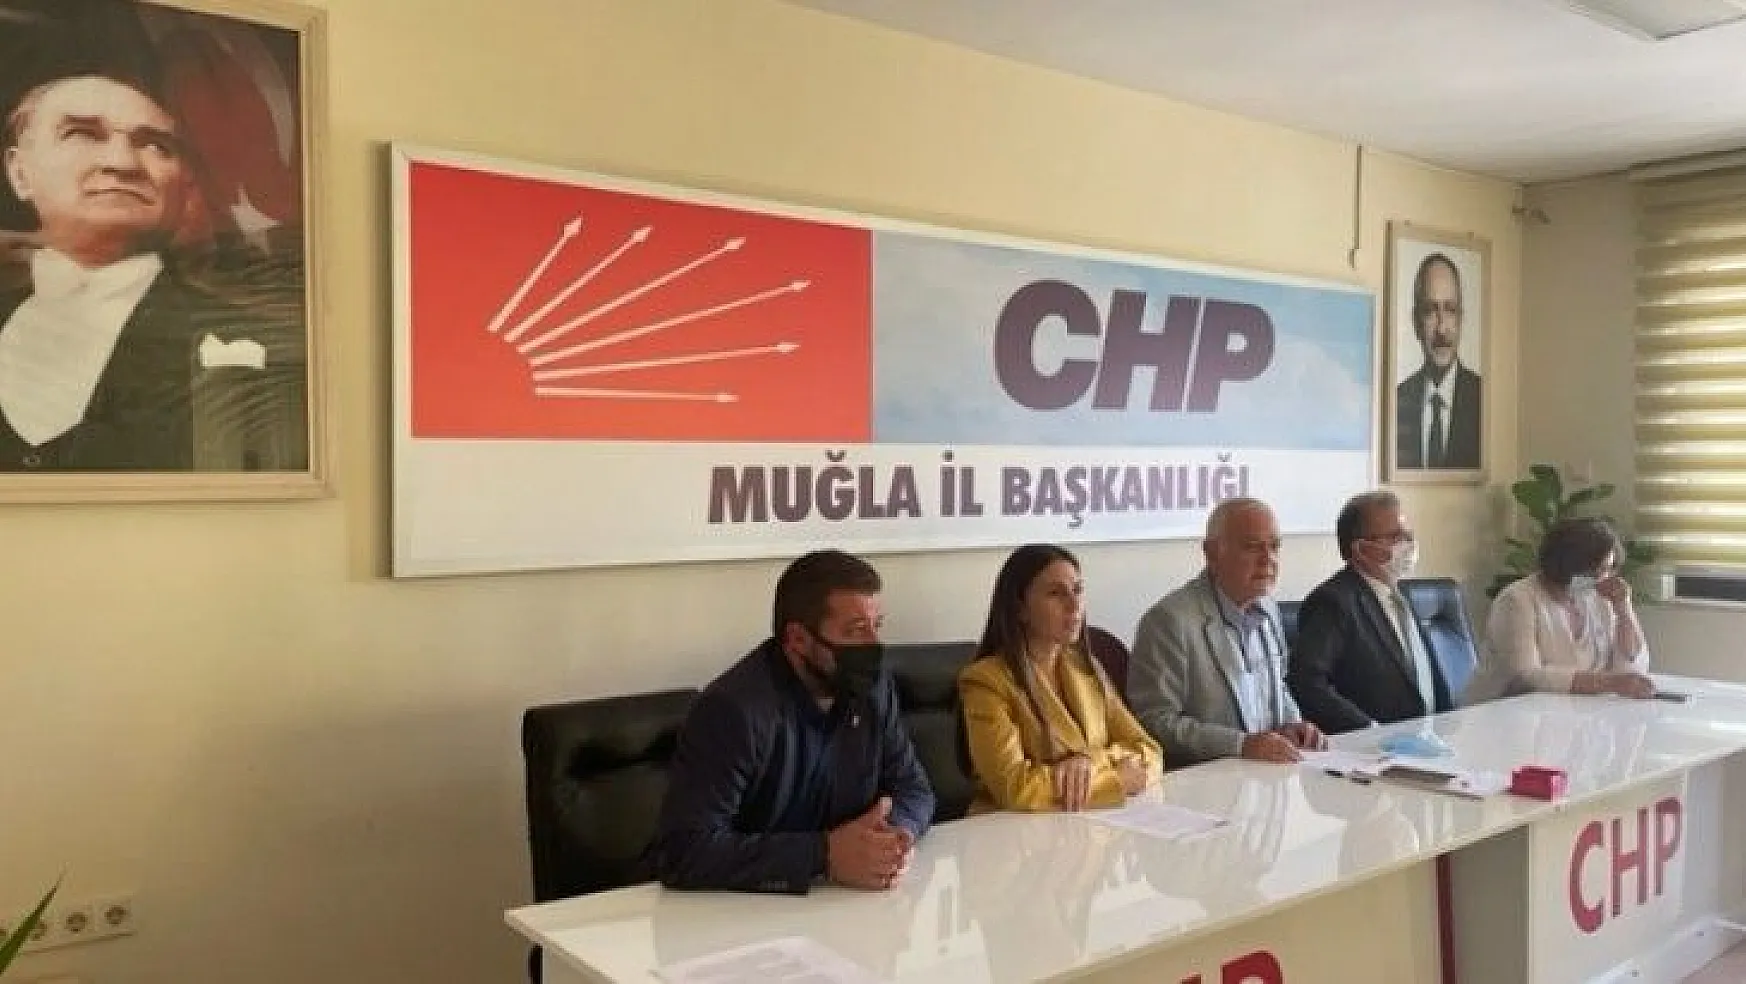 CHP Muğla İl Başkanı Zeybek, 'Geleceğimizi karanlıktan kurtaracağız!'